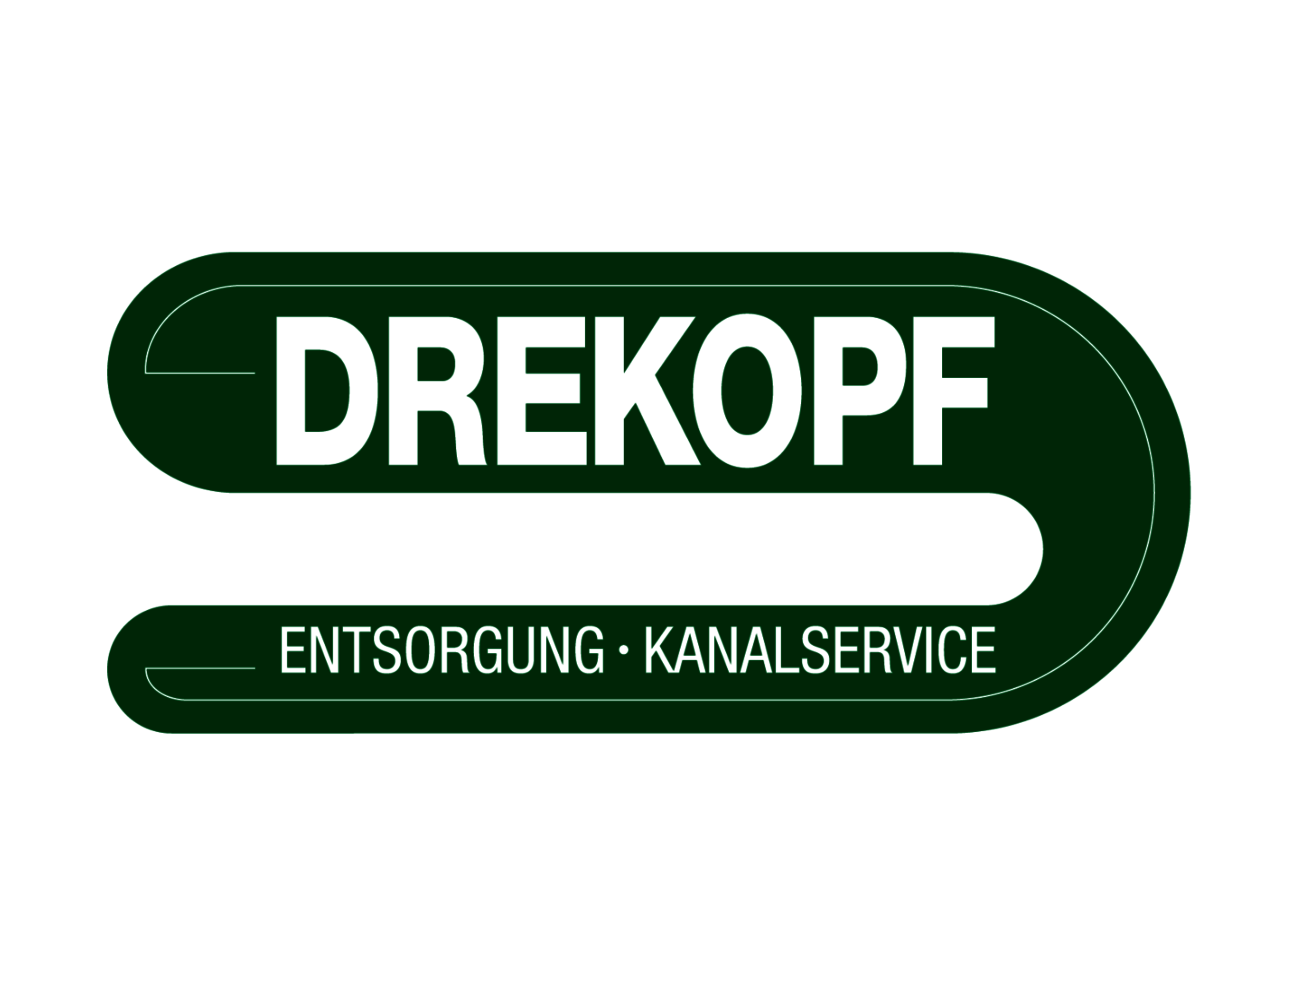 Drekopf_Logo